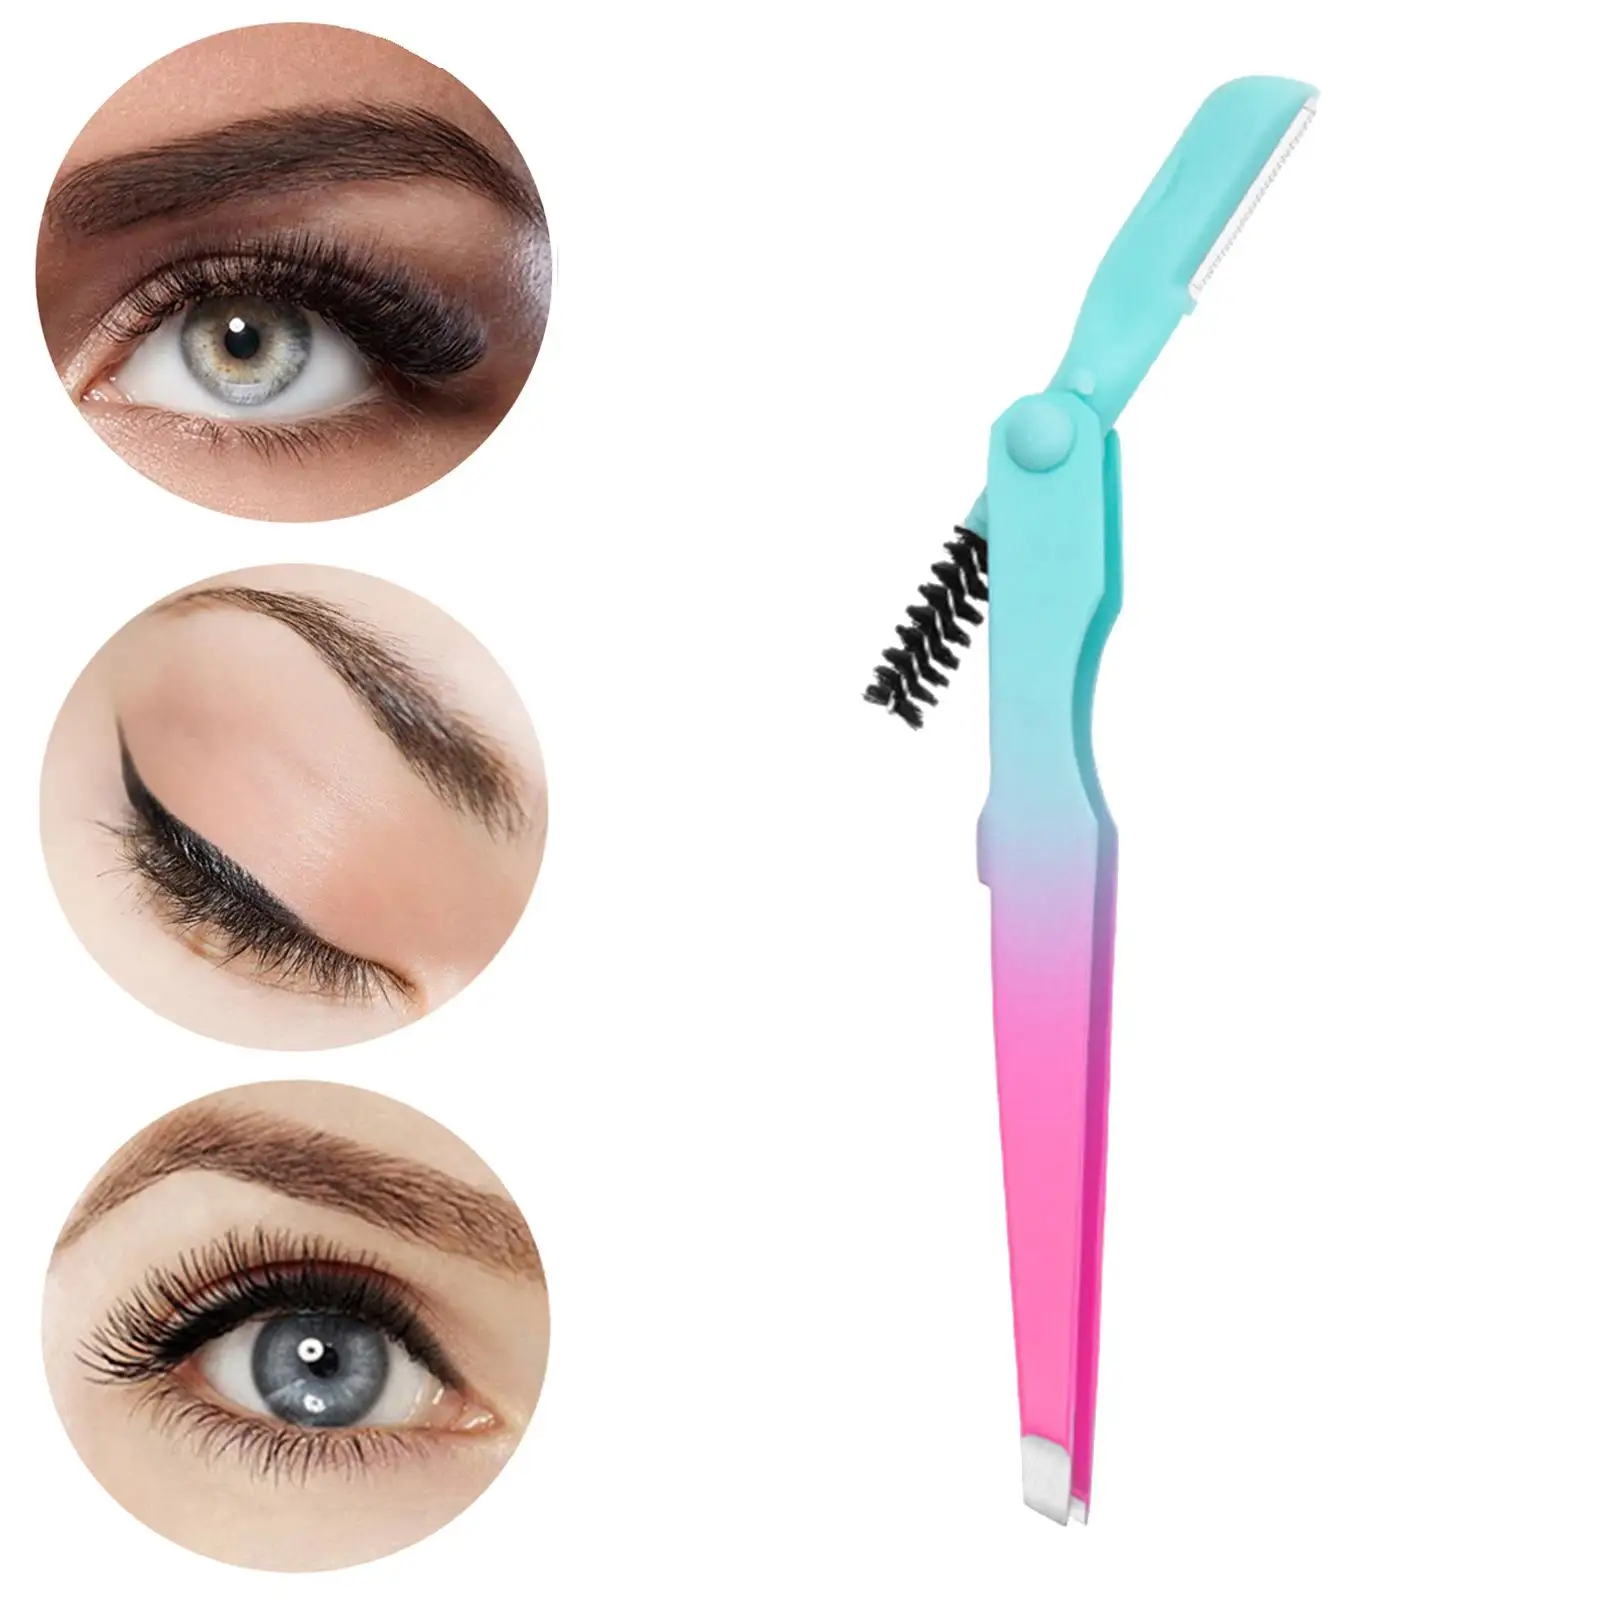 Eyebrow Tweezers for Women Girl Makeup Tools Multipurpose Eyebrow Trimmer